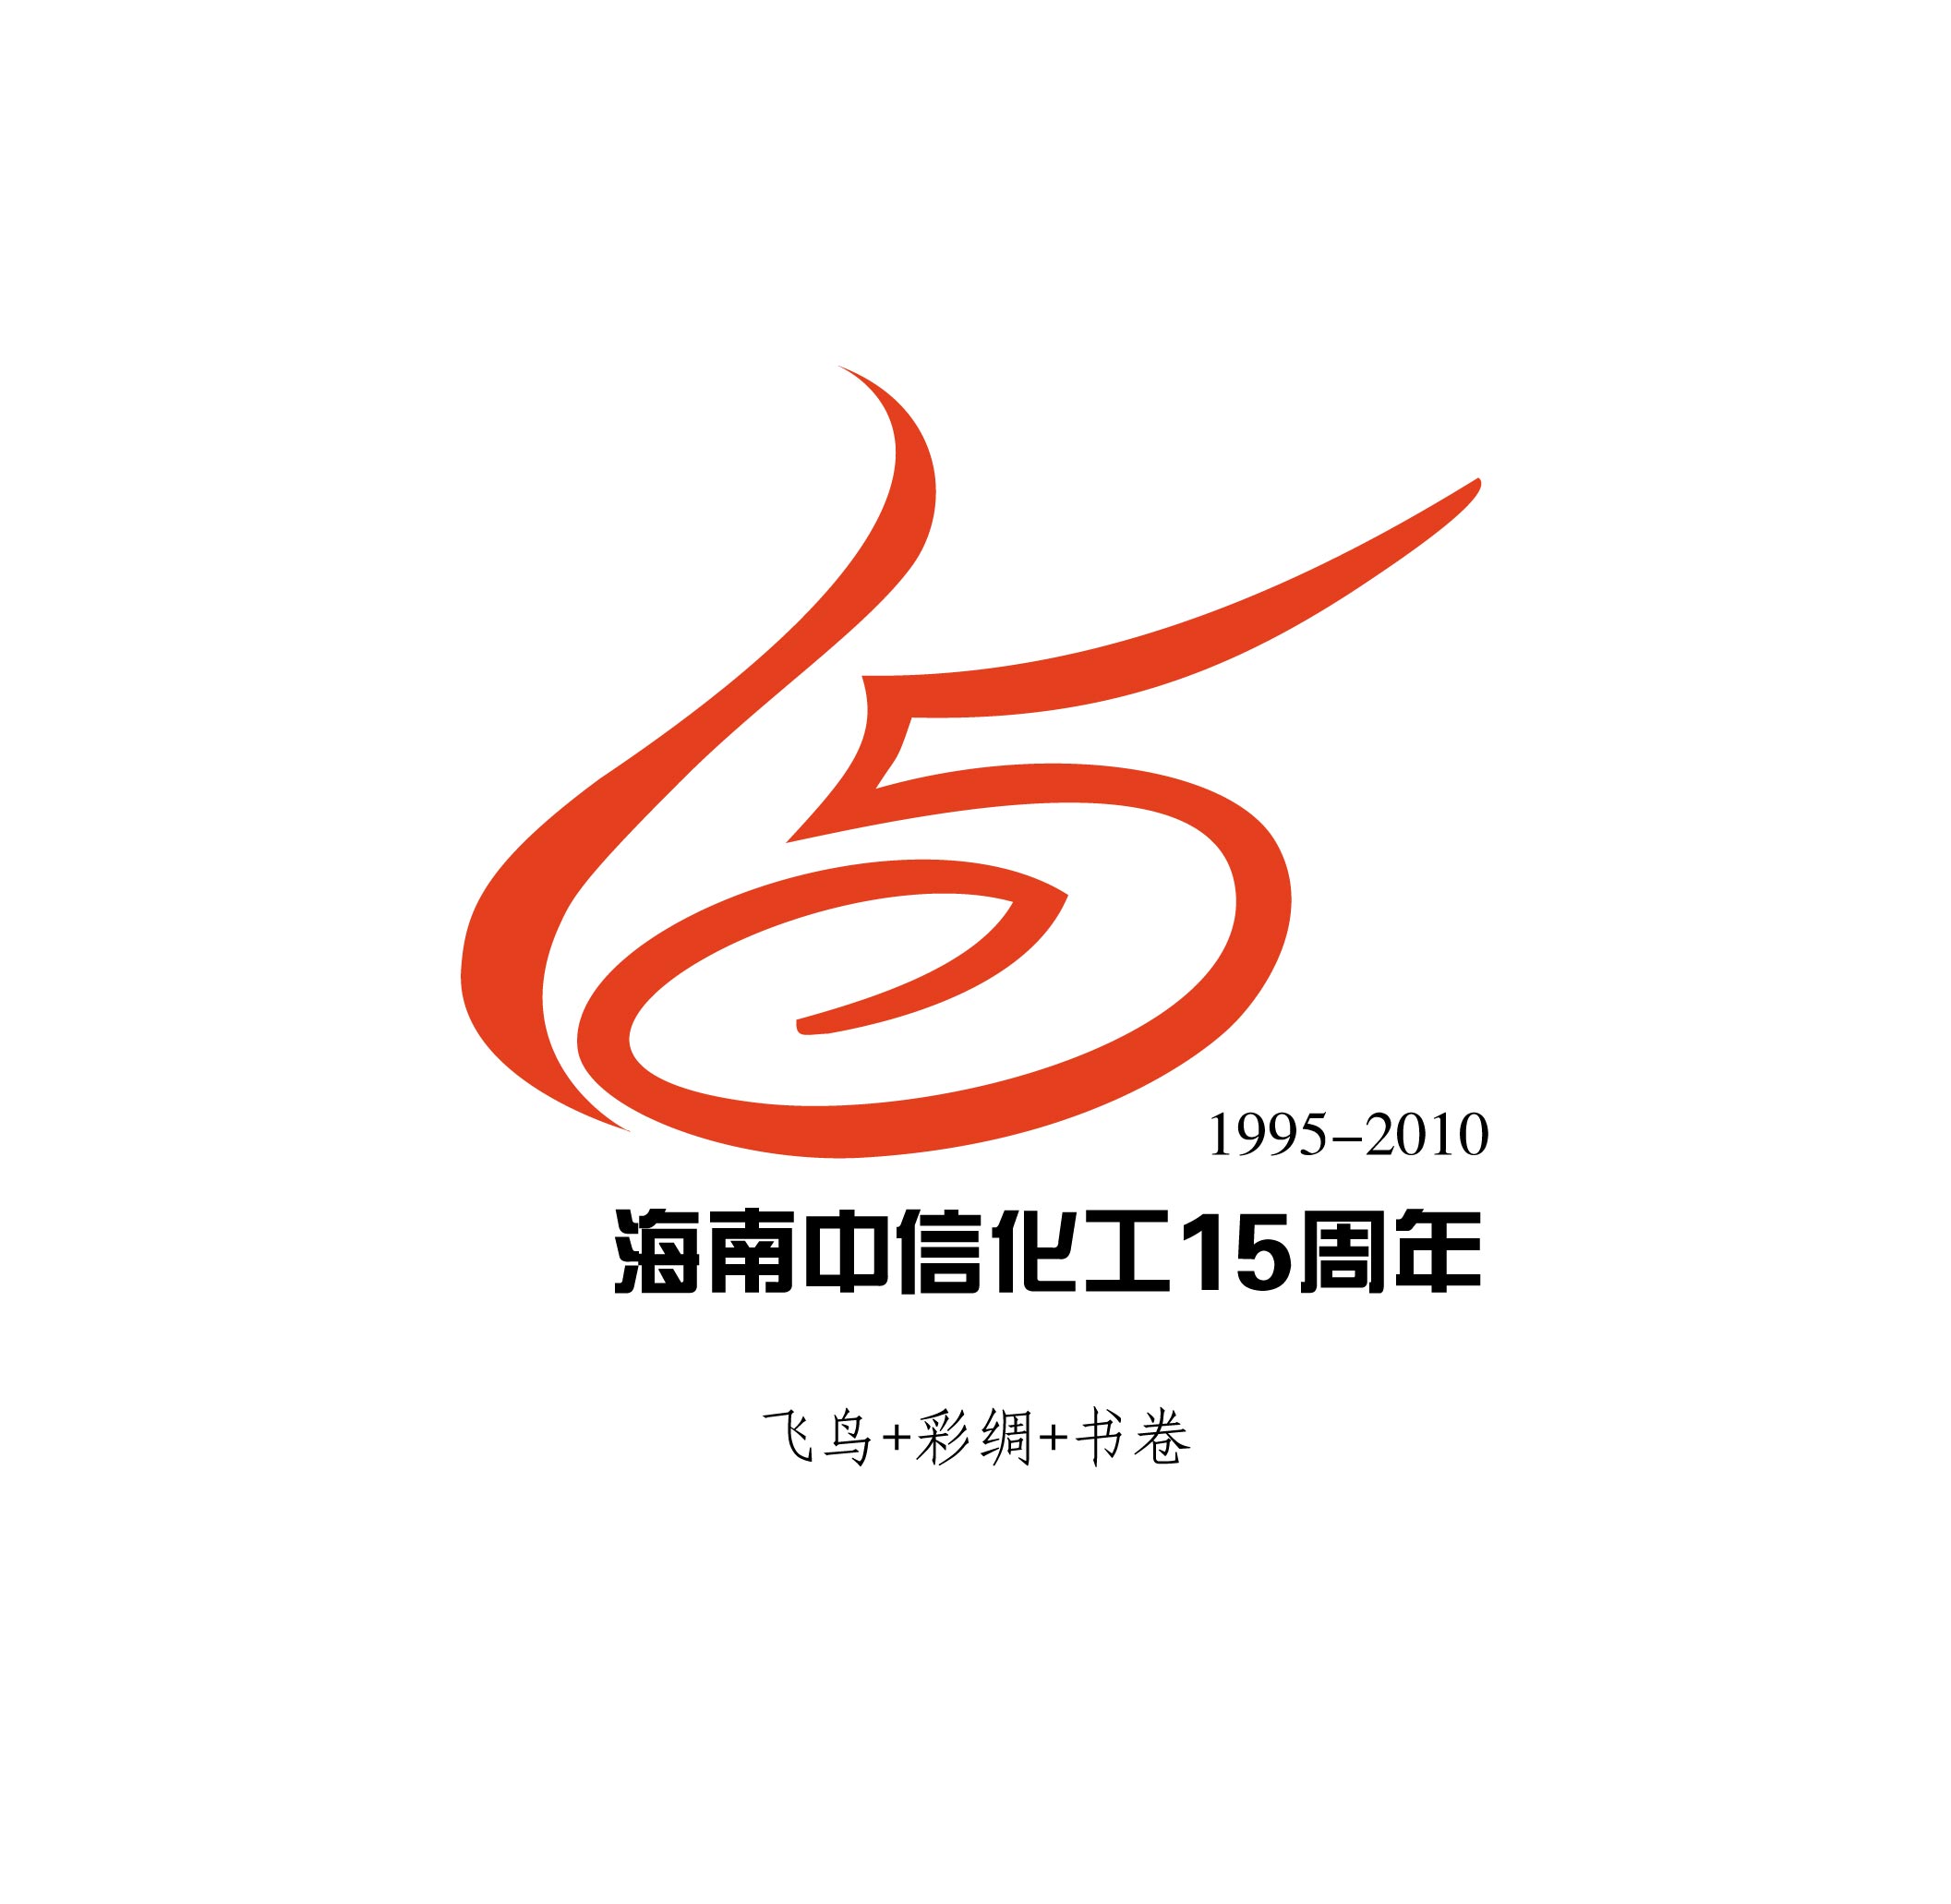 海南中信化工有限公司成立周年标志